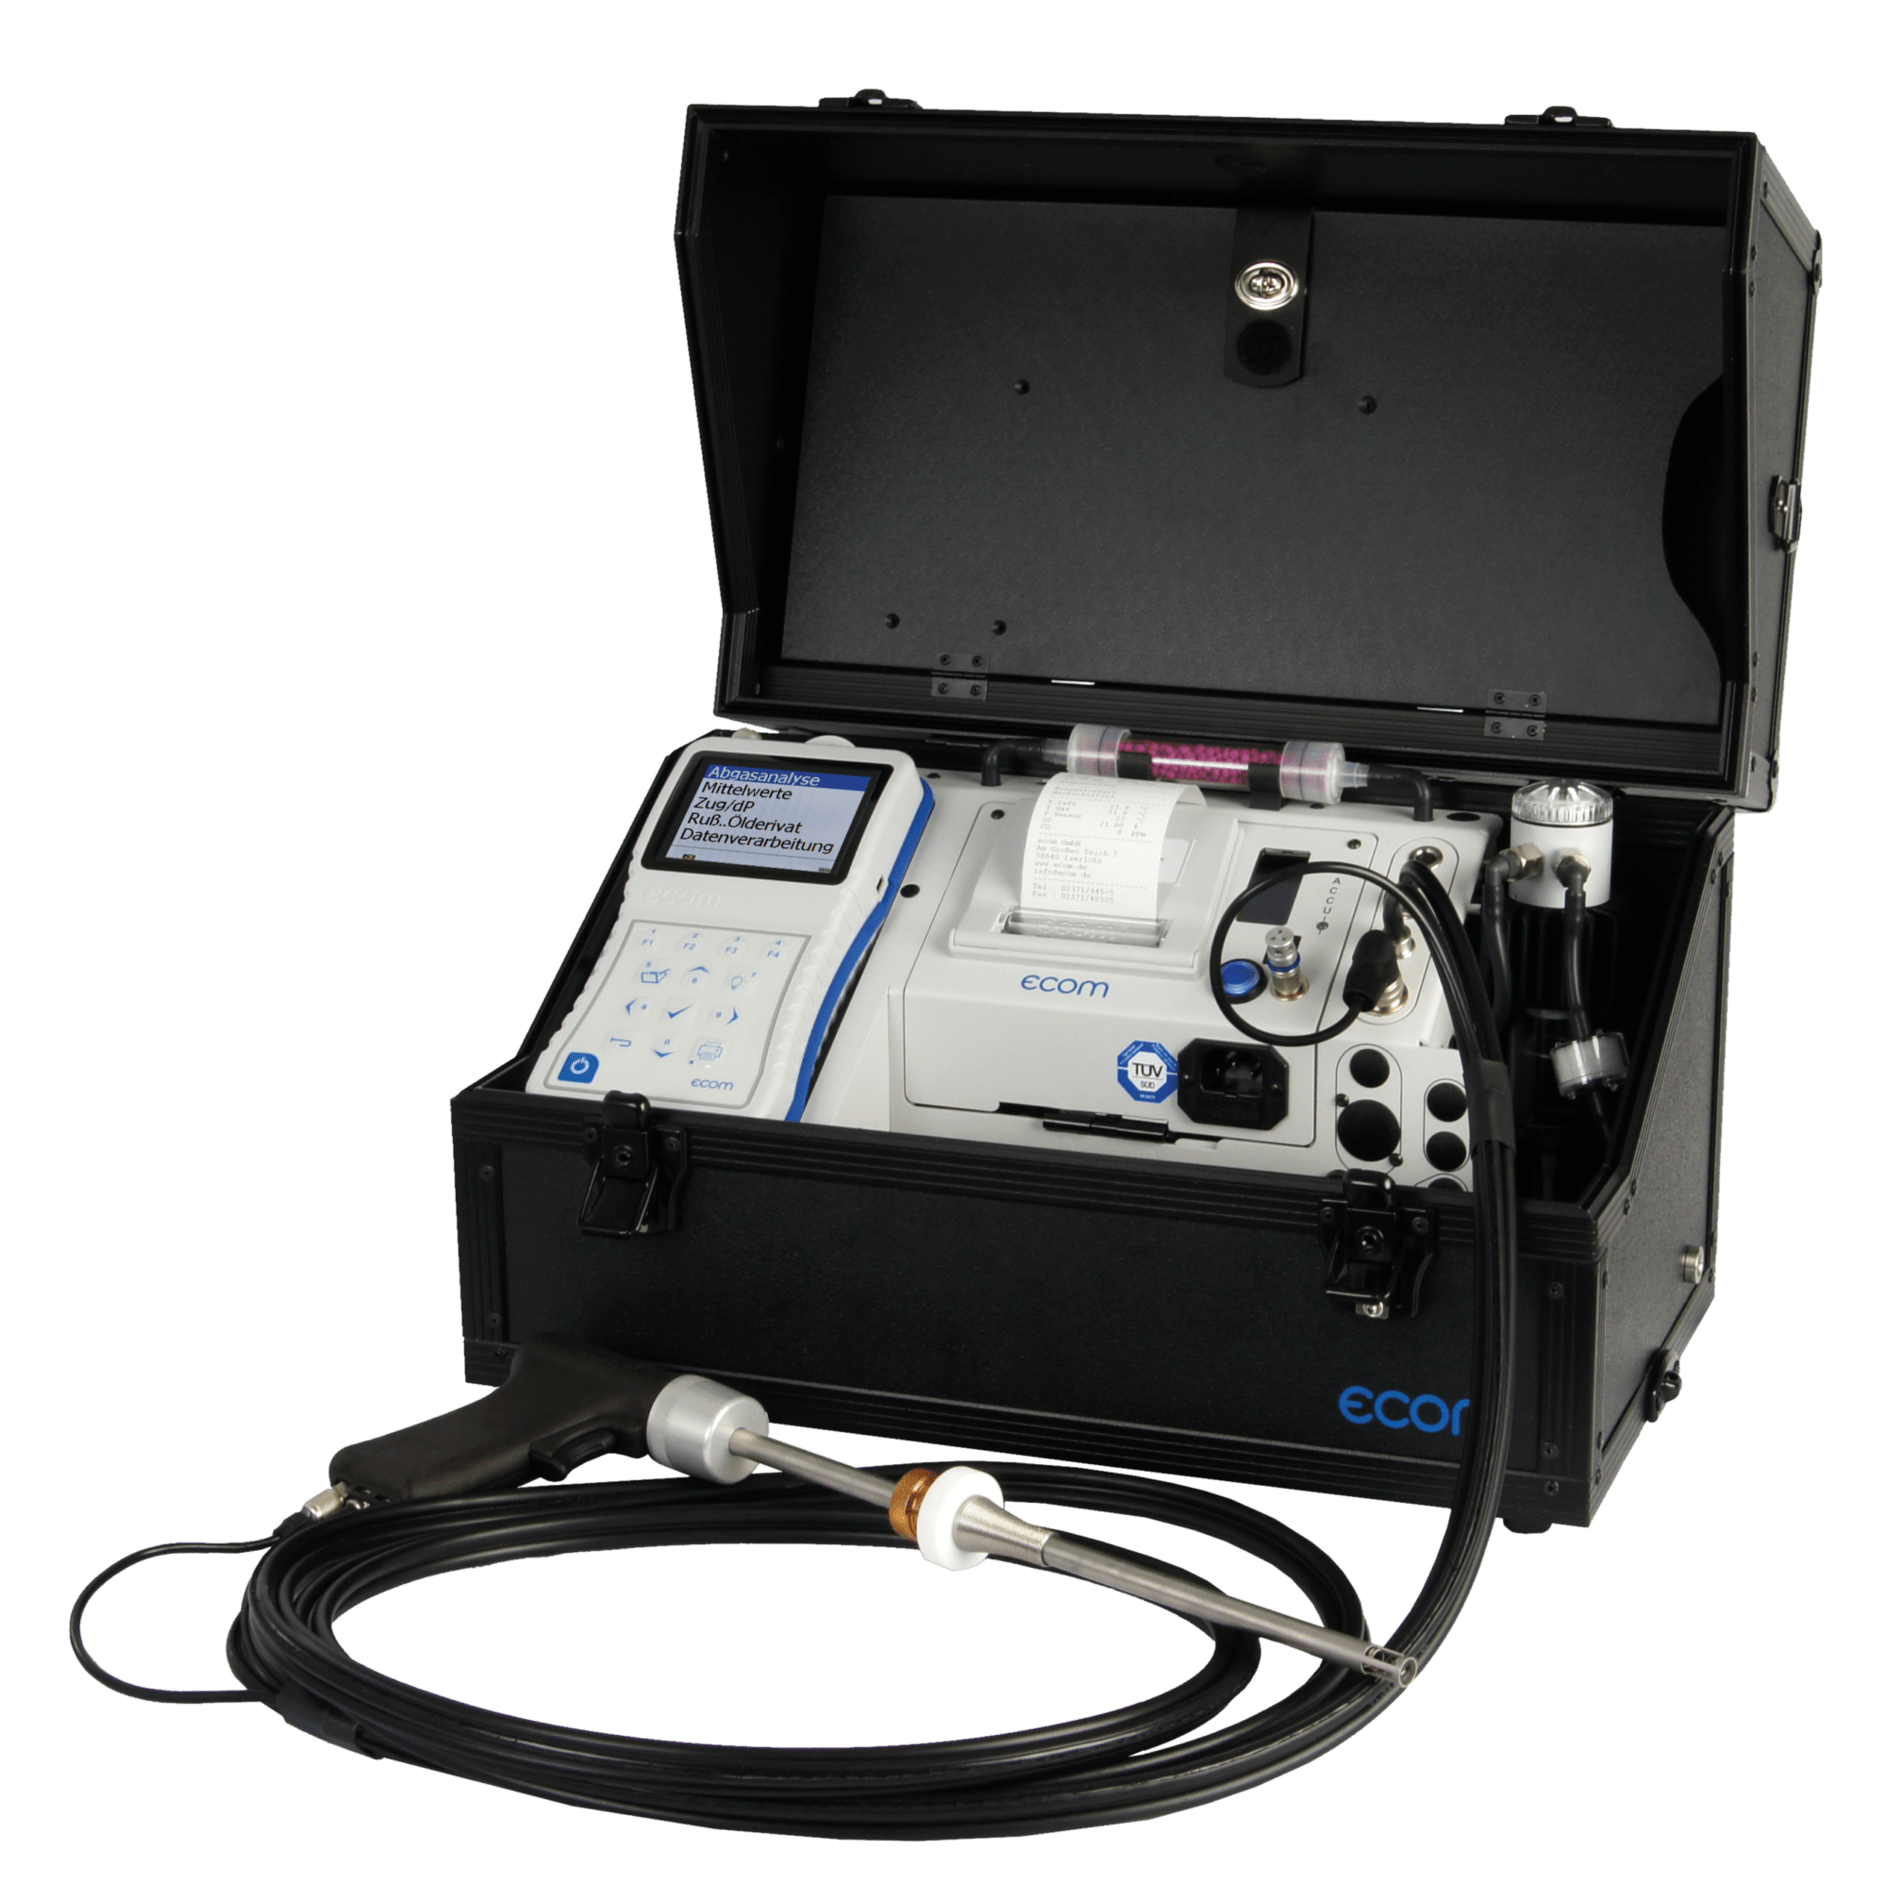 ecom-J2KNpro Easy - Abgasanalysegerät für größere Heizungsanalagen, Motoren, Brenner sowie industriellen Anwendungen